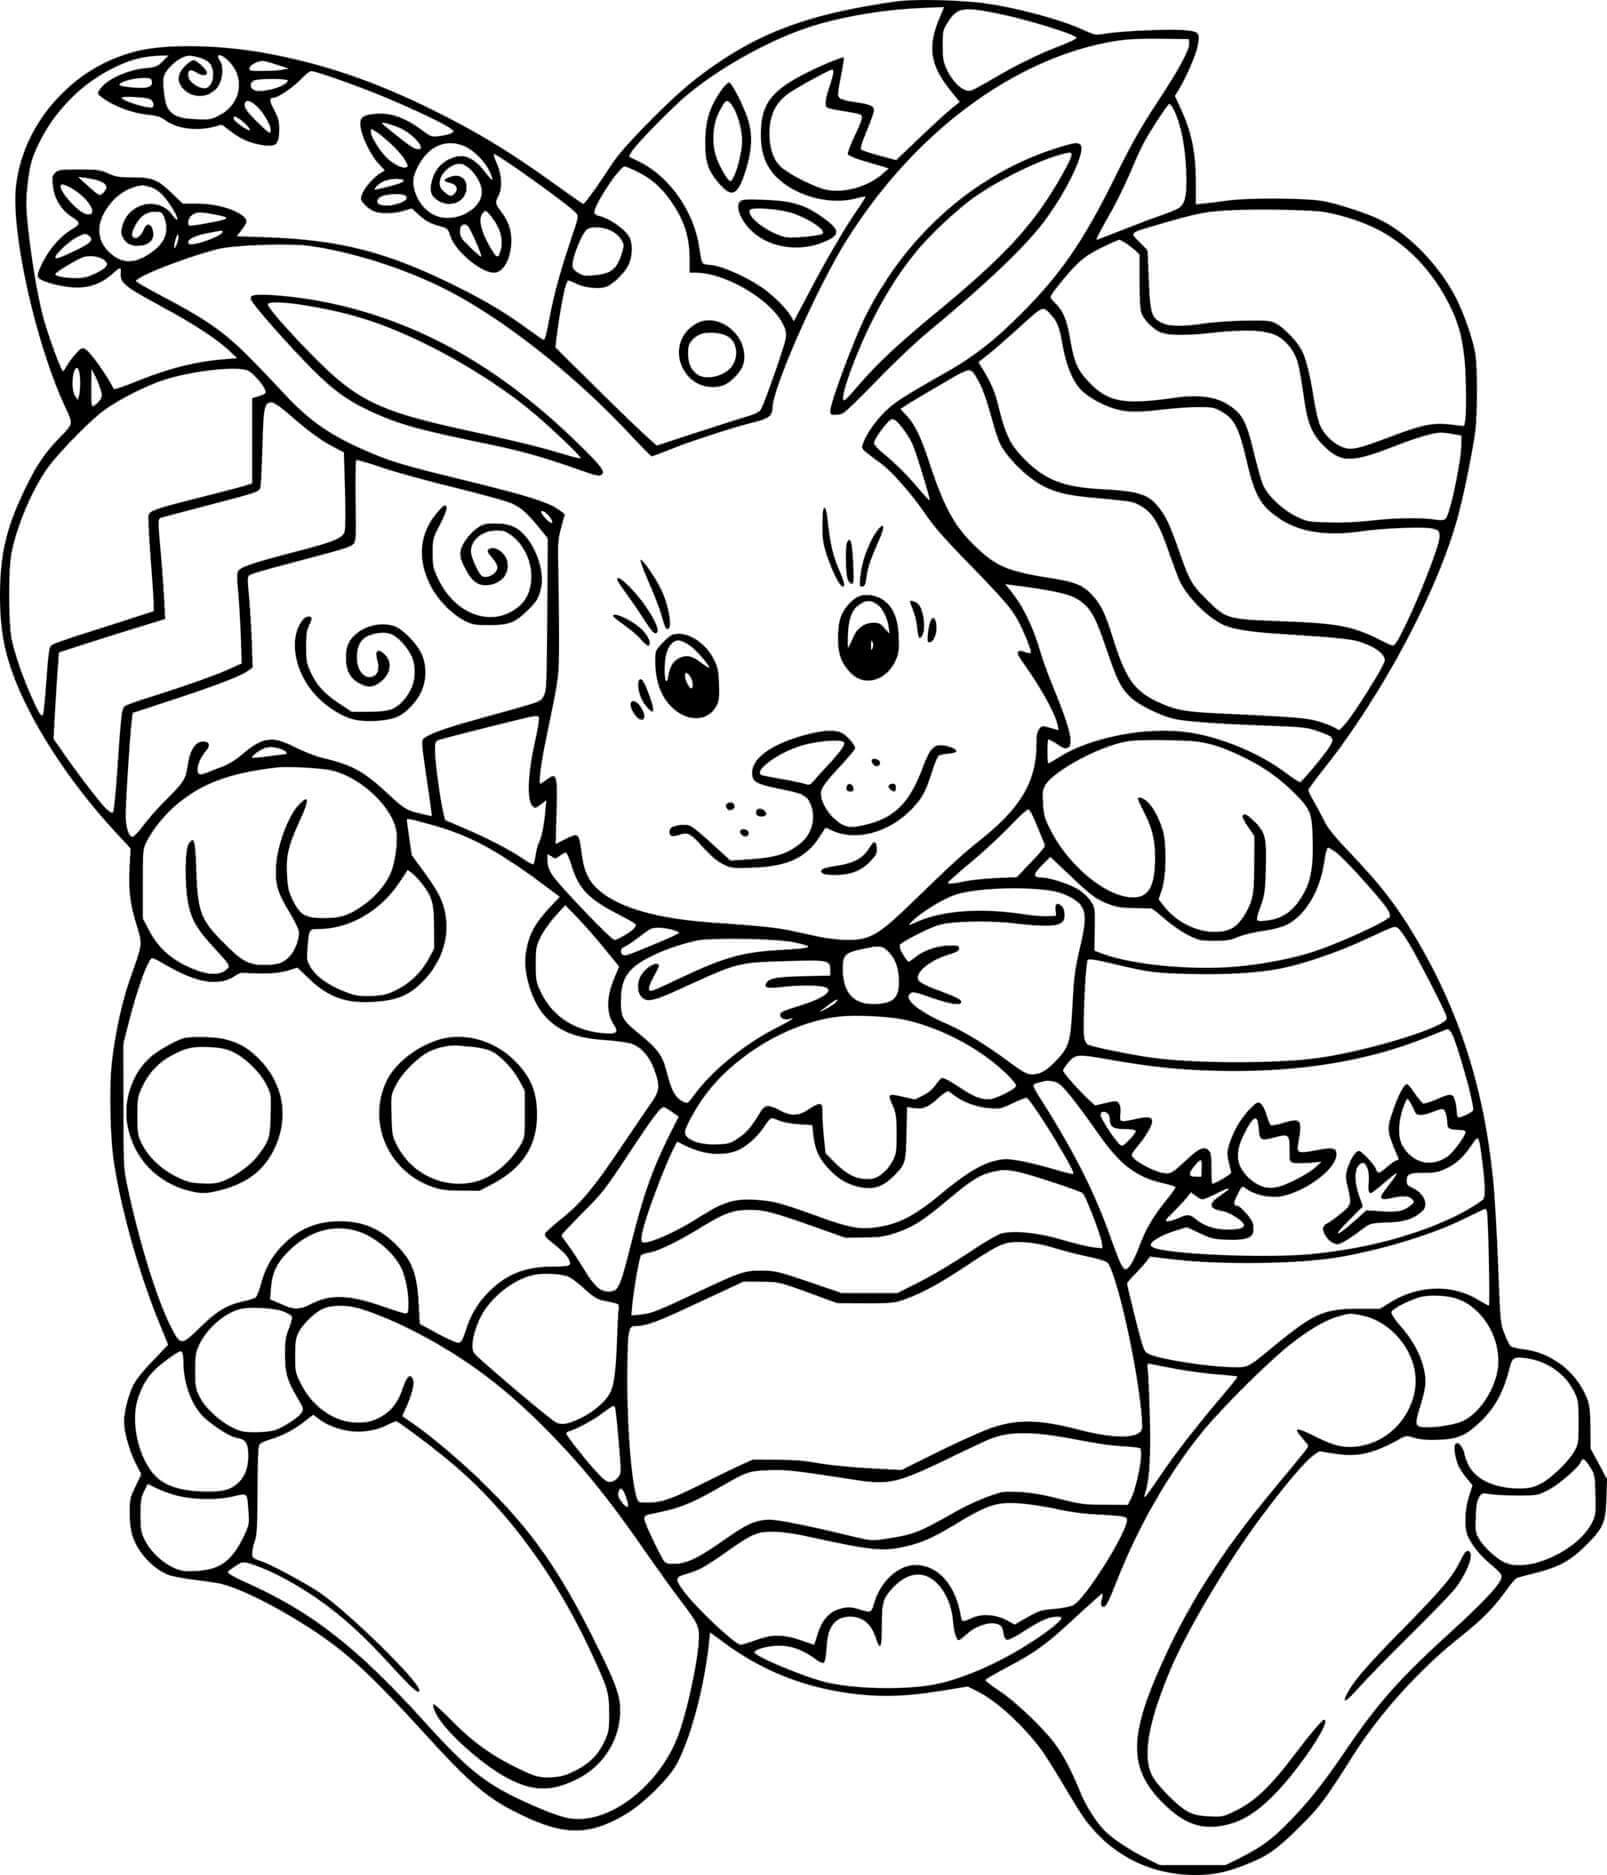 Раскрашиваем пасхальные. Пасхальная раскраска. Пасхальный заяц раскраска. Раскраски пасхальные для детей. Пасхальный кролик раскраска для детей.